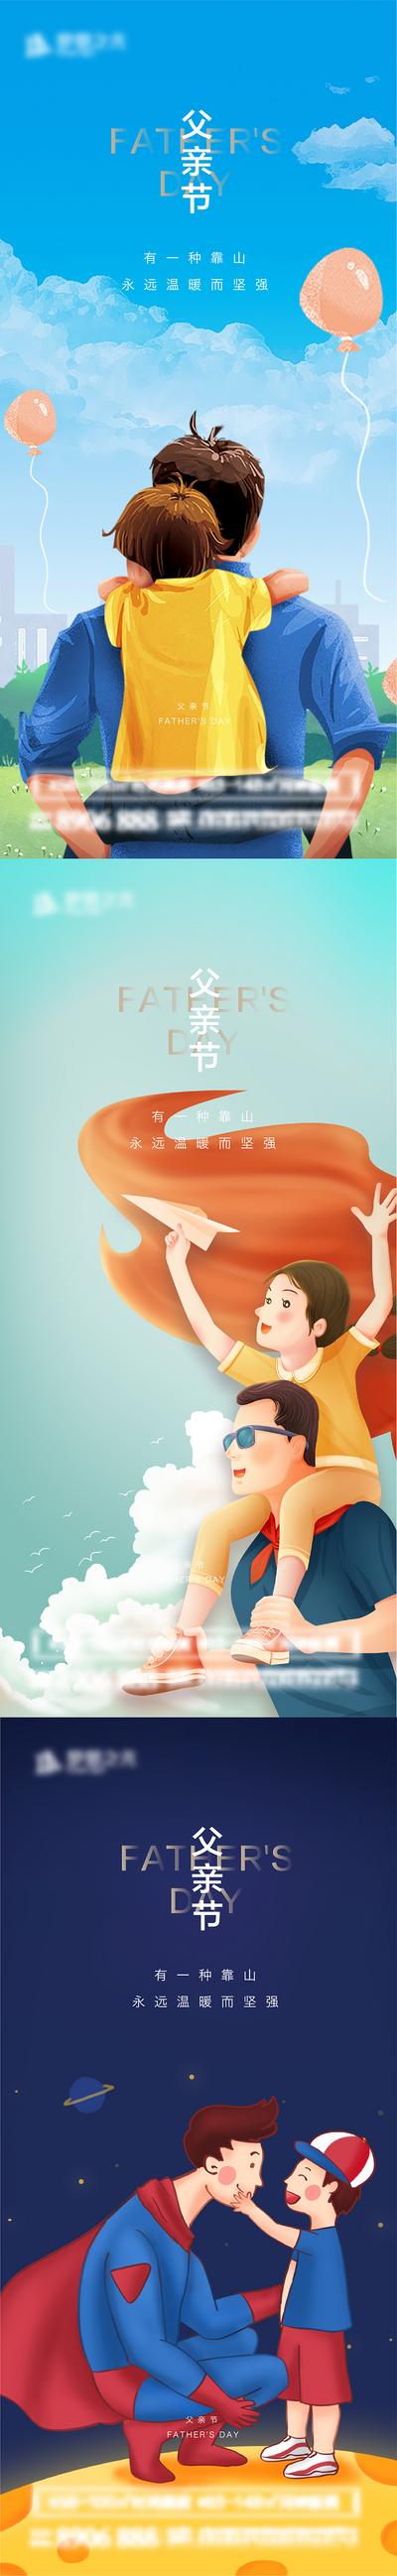 南门网 海报 房地产 公历节日 父亲节 插画 系列